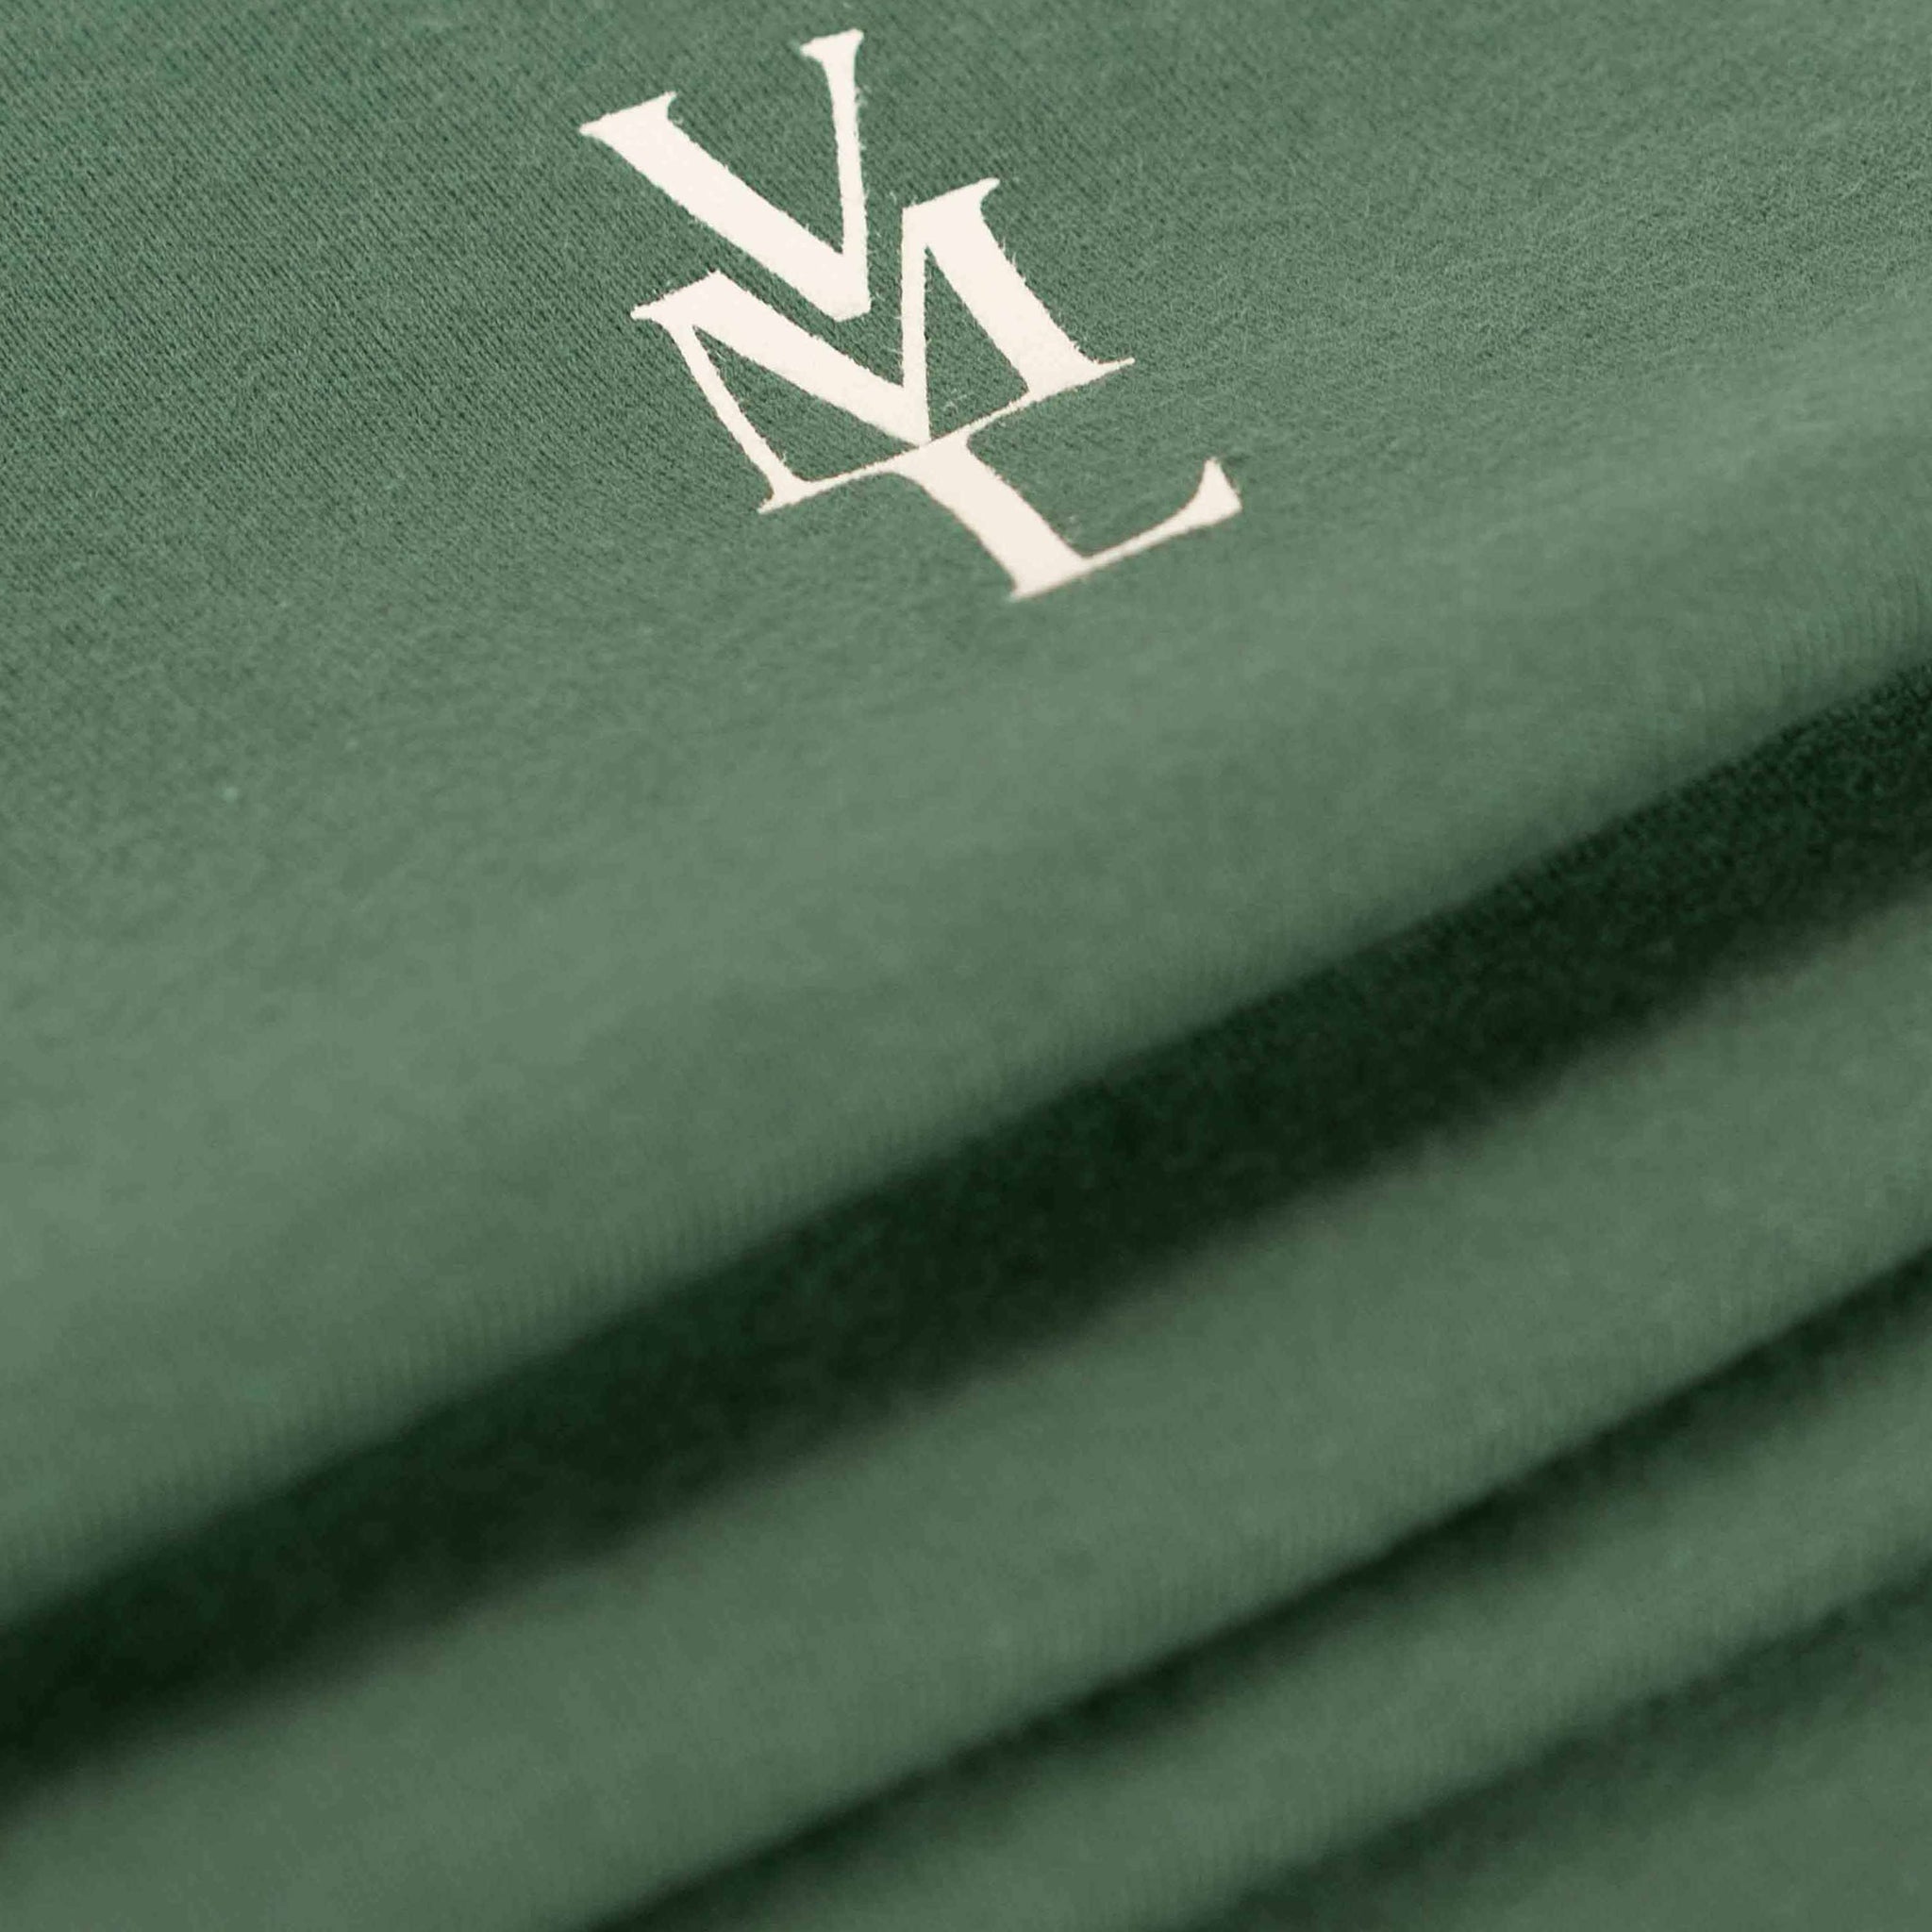 Green|Green Alpine Emblem T-Shirt